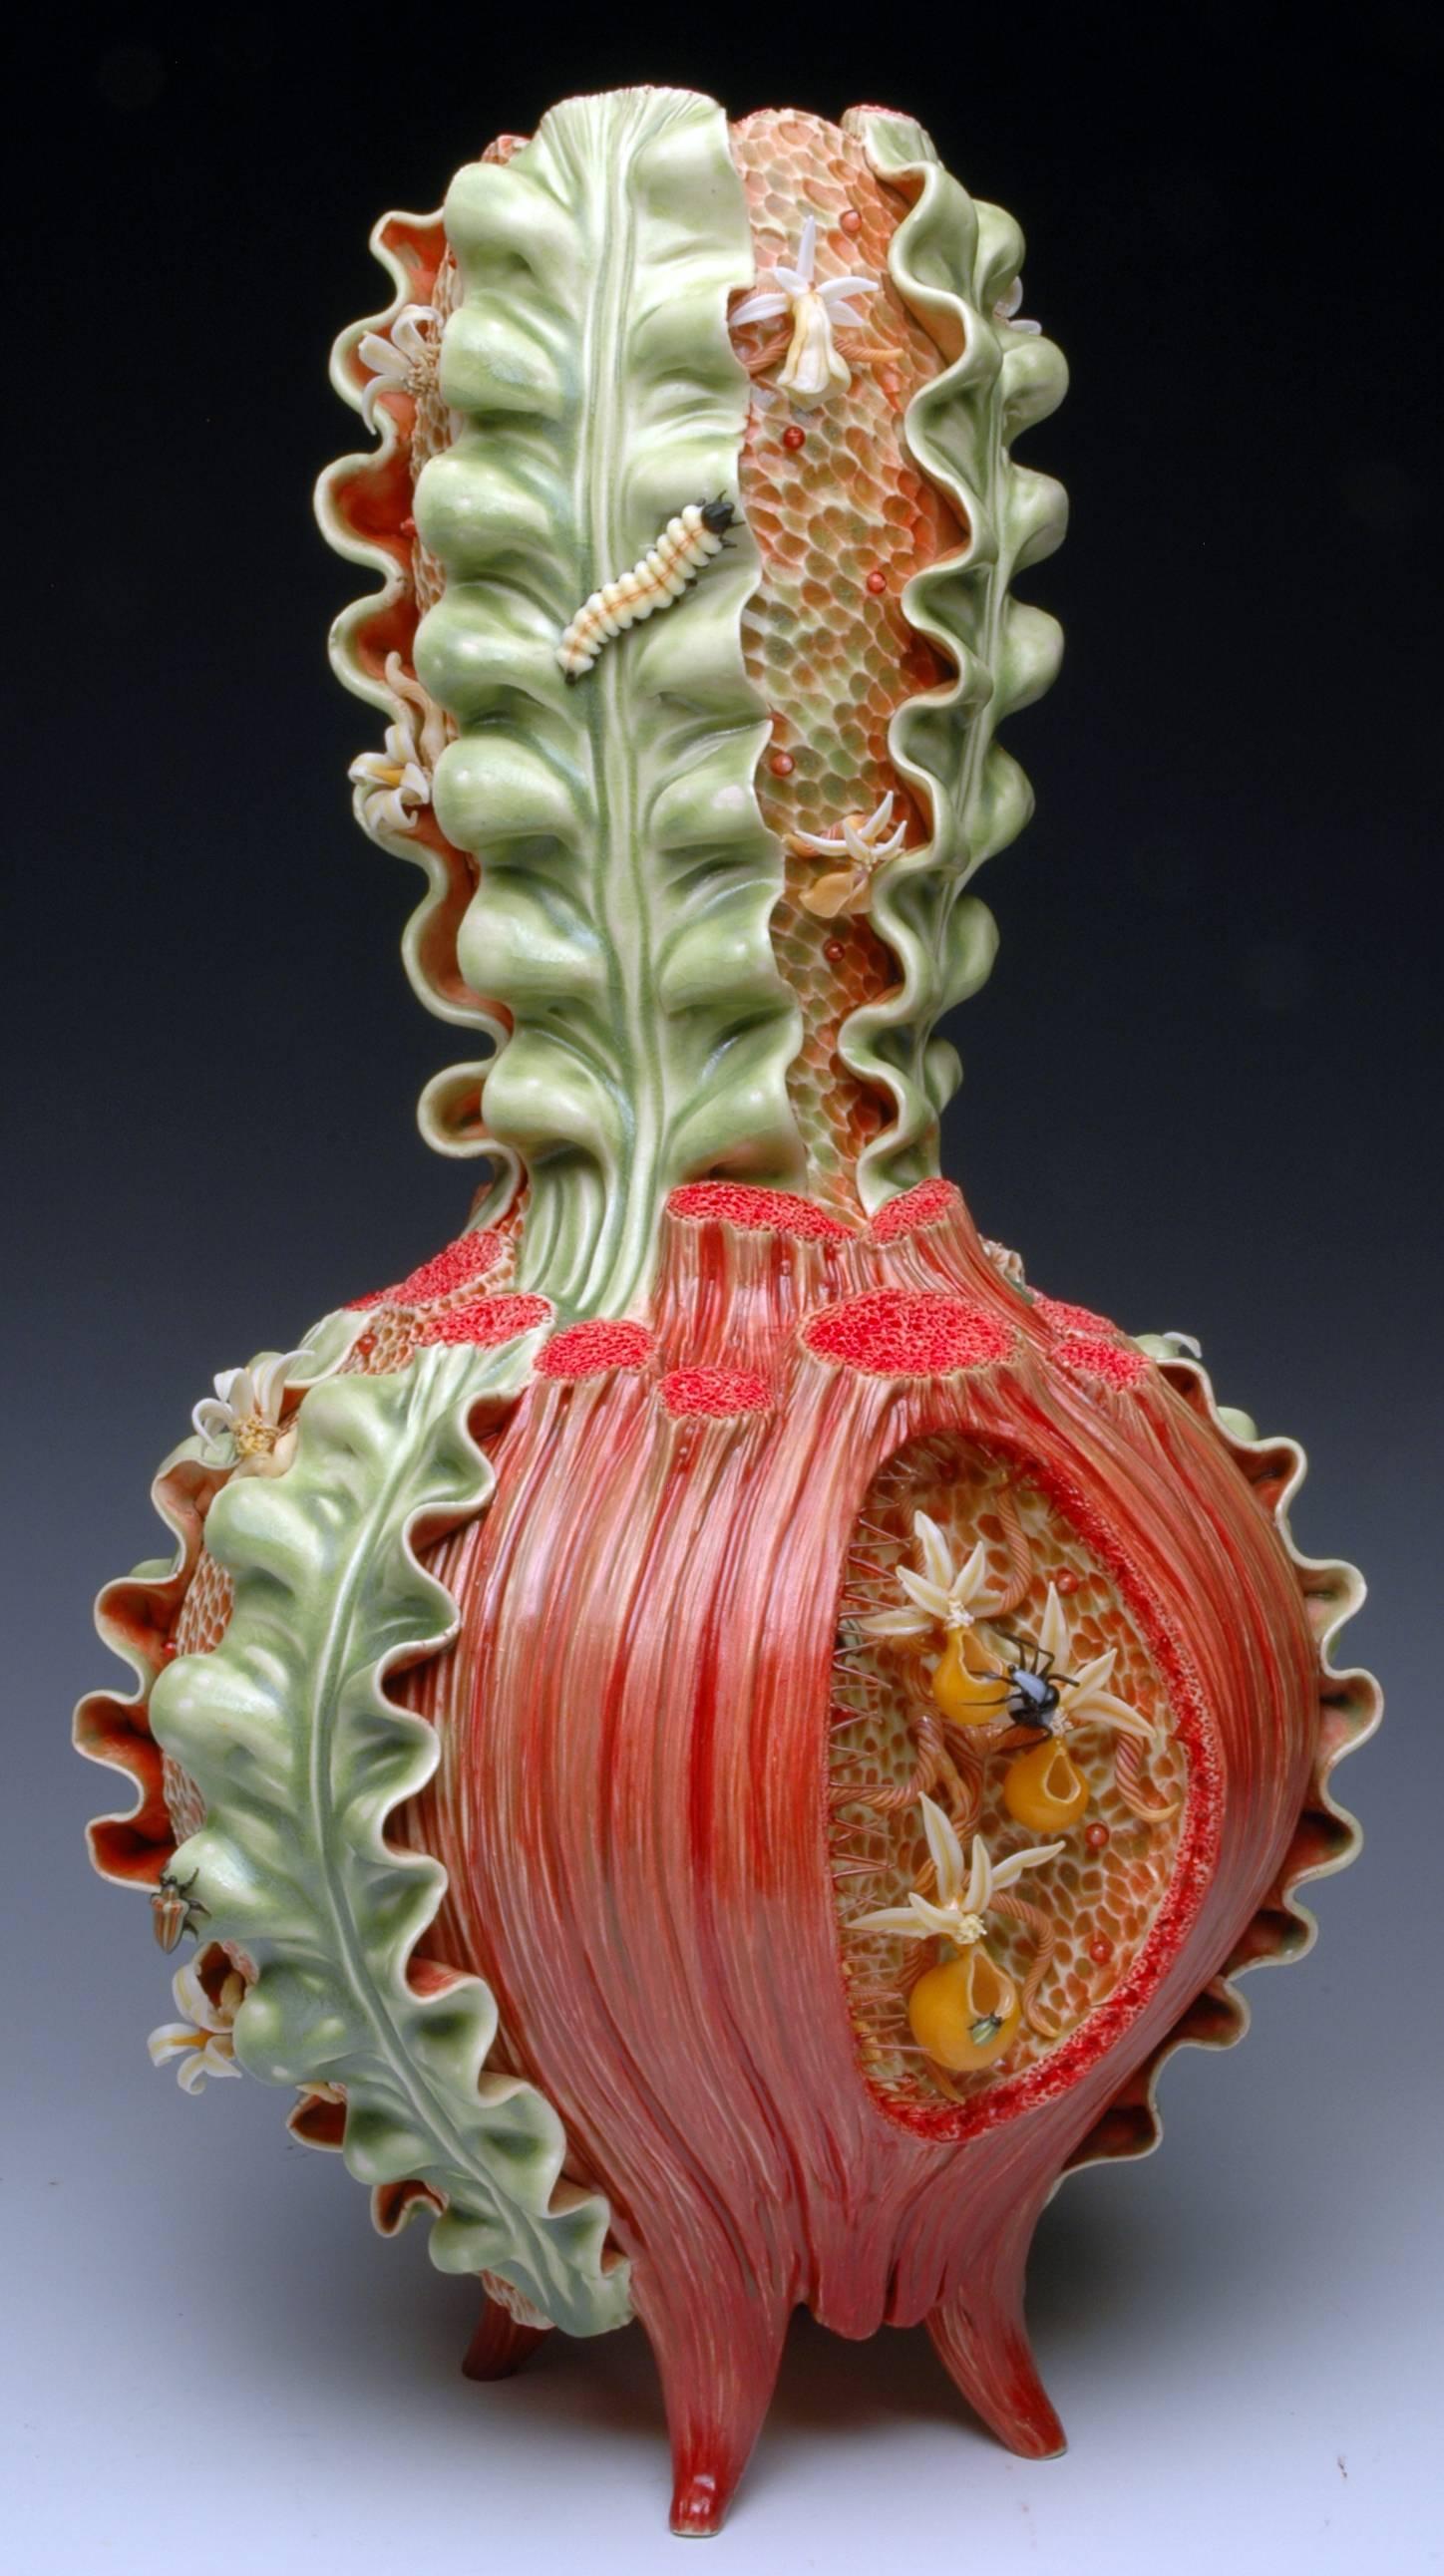 Bonnie Seeman Still-Life Sculpture - "Vase Form", Contemporary, Ceramic, Sculpture, Glass Accents, Colored Porcelain